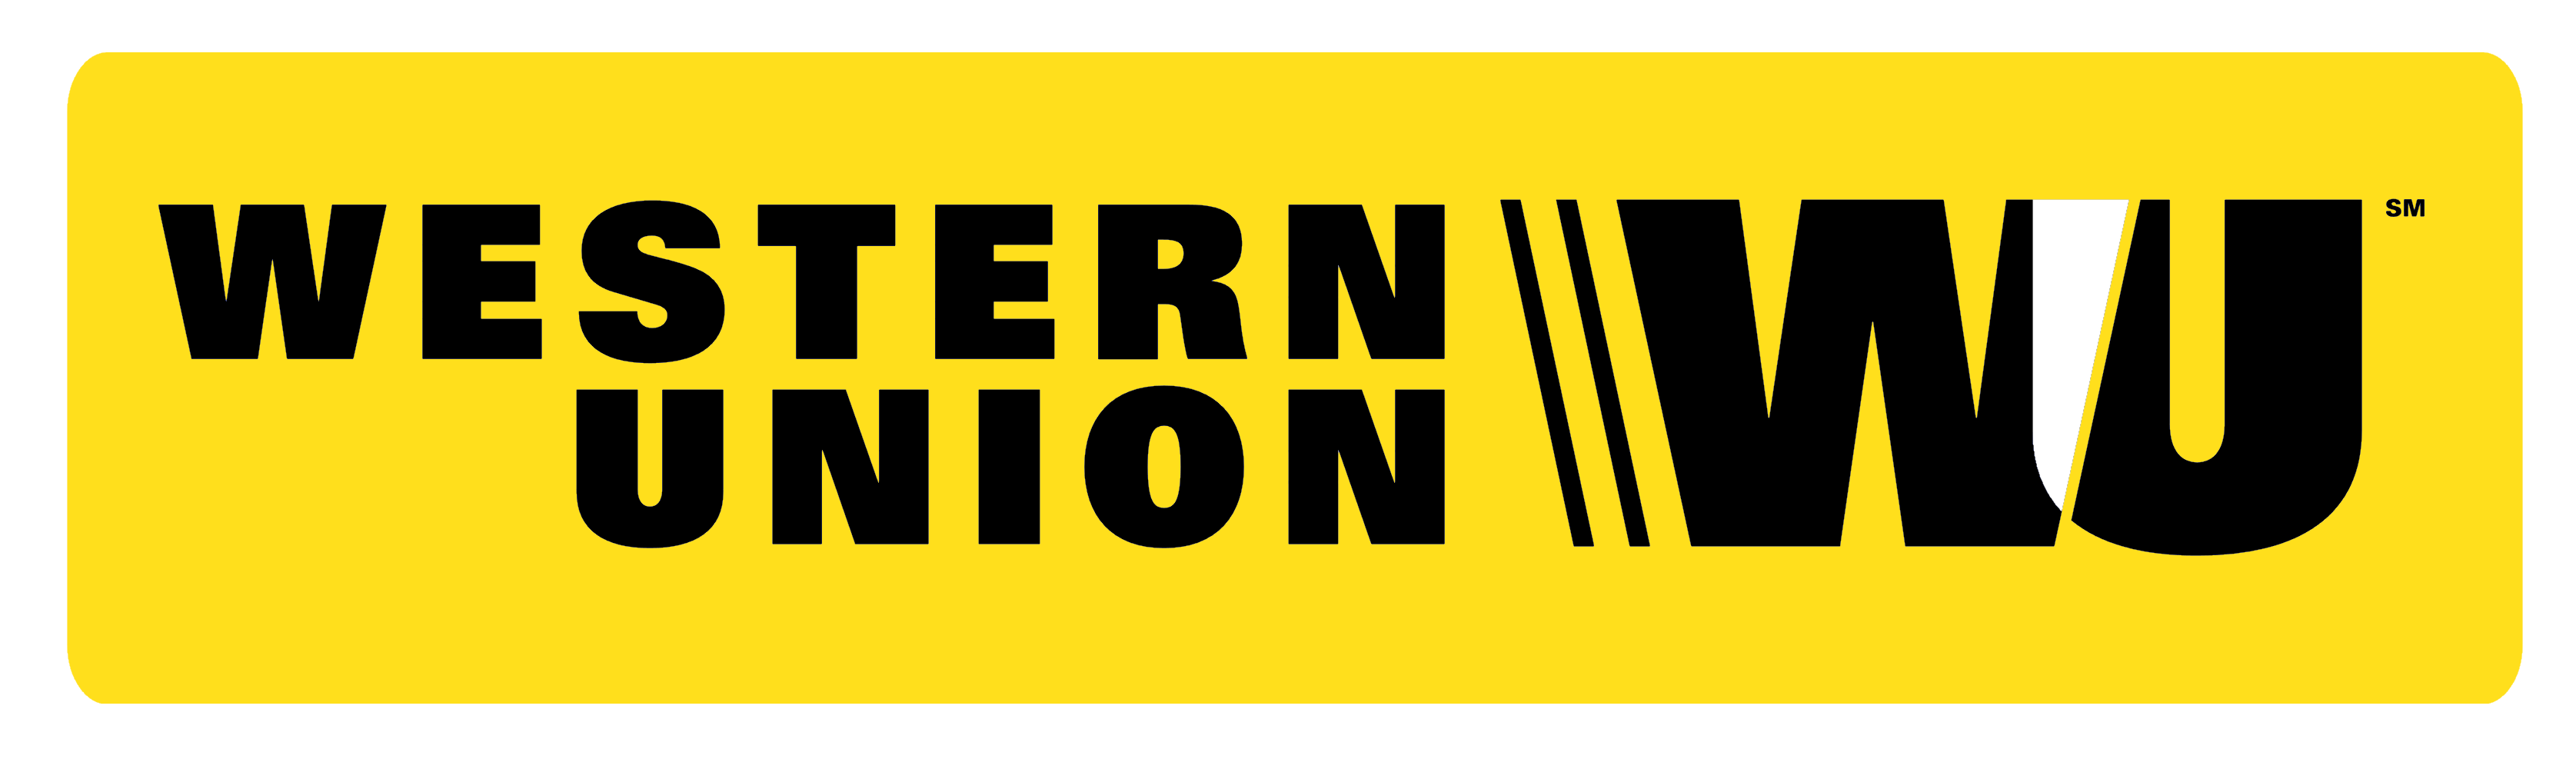 Westernunion Logo - Western Union